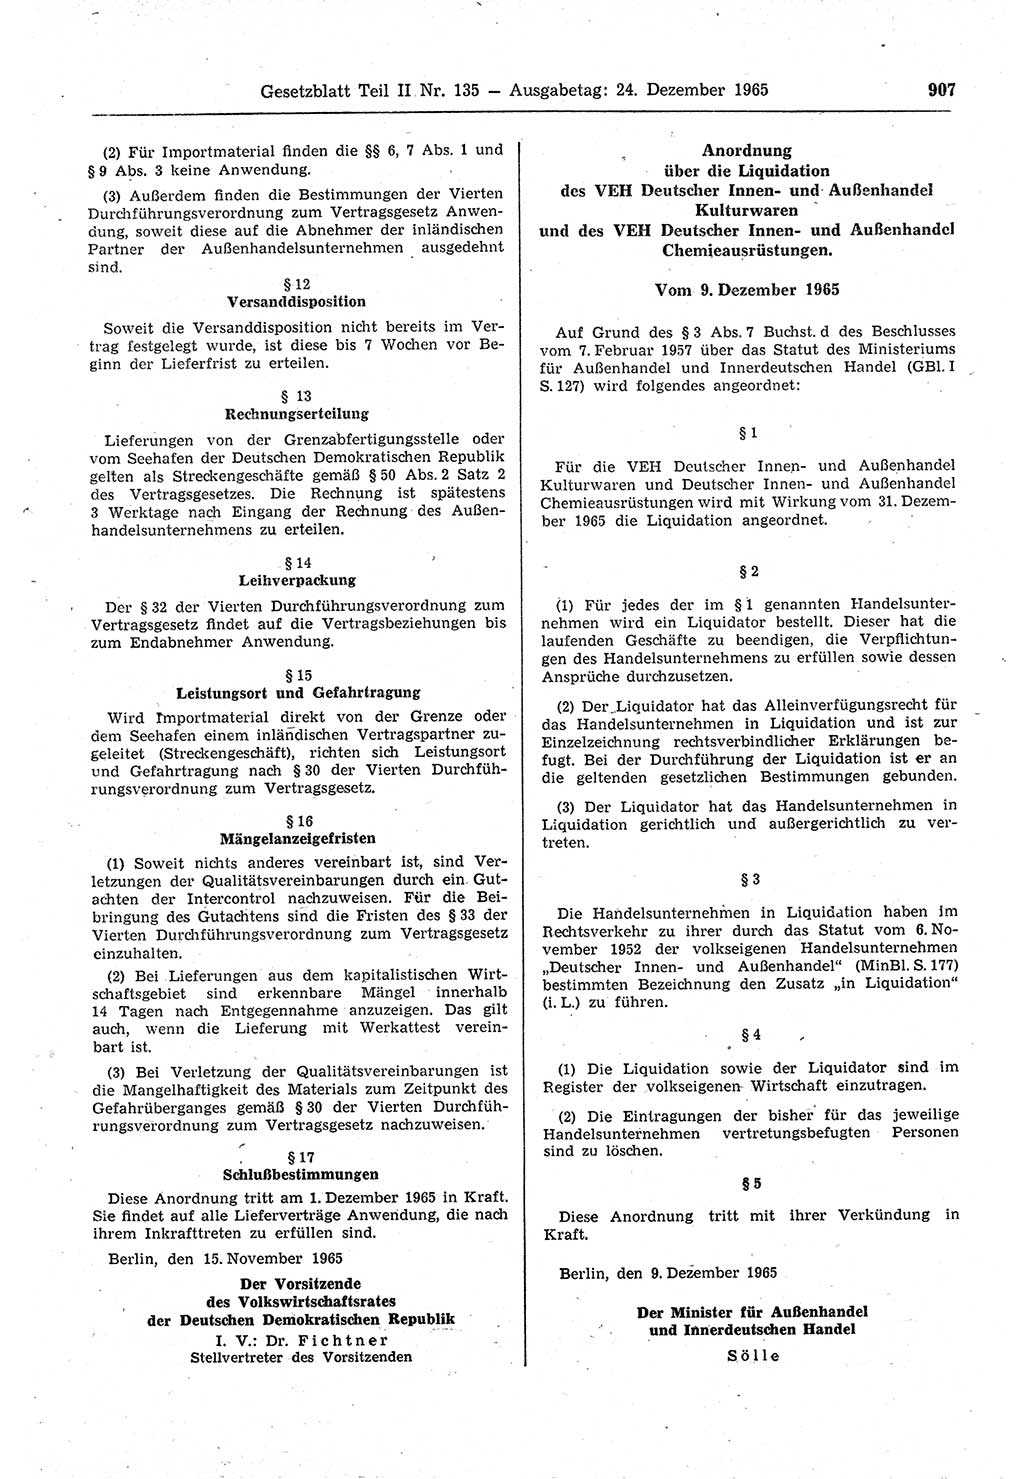 Gesetzblatt (GBl.) der Deutschen Demokratischen Republik (DDR) Teil ⅠⅠ 1965, Seite 907 (GBl. DDR ⅠⅠ 1965, S. 907)